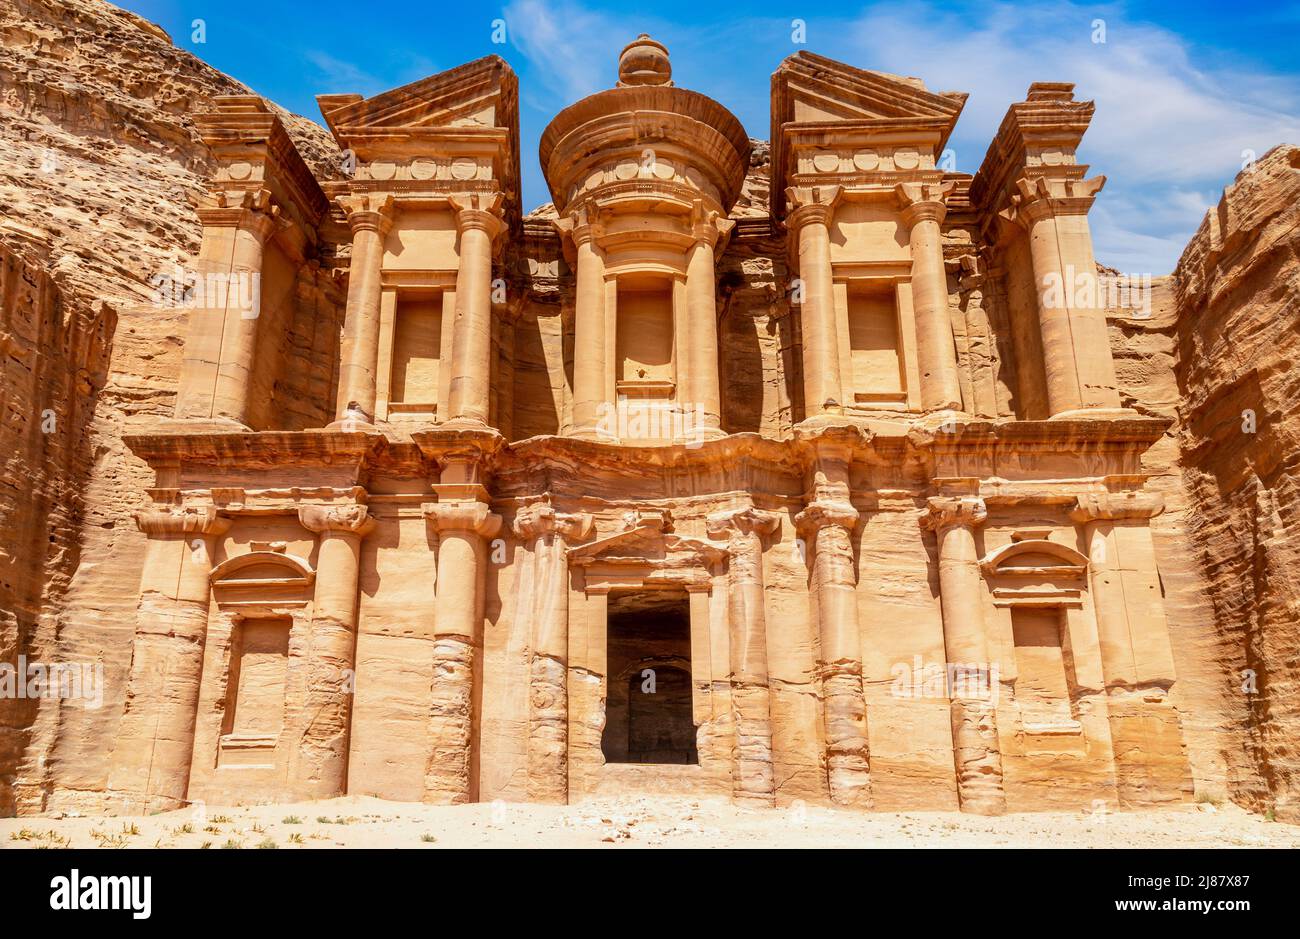 Ad Deir o el Monasterio, antiguo templo de piedra labrada nabatea, Petra, Jordania Foto de stock